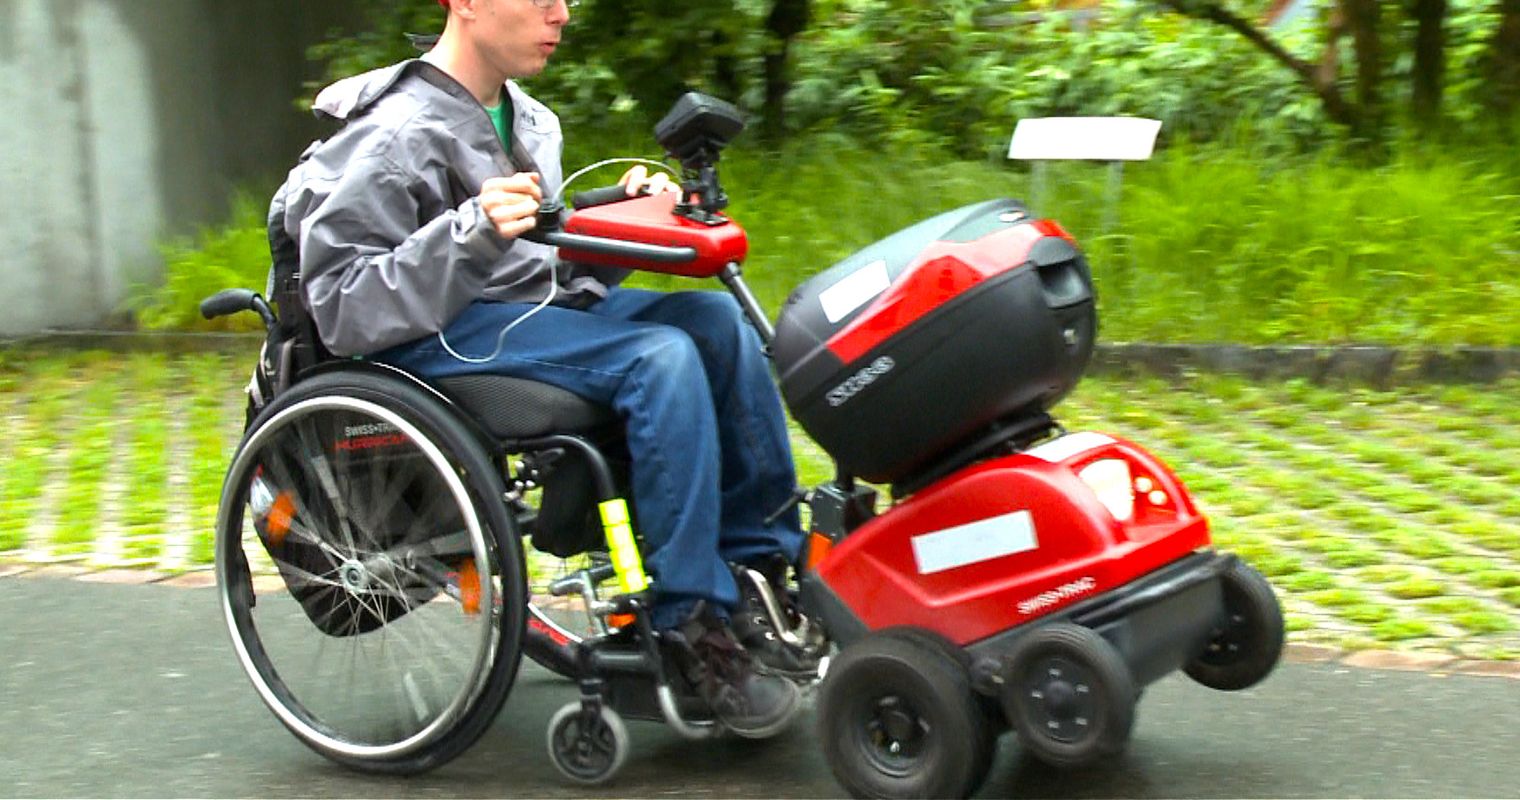 Zuwebe-Film fragt: Was erwarten Behinderte vom Leben?